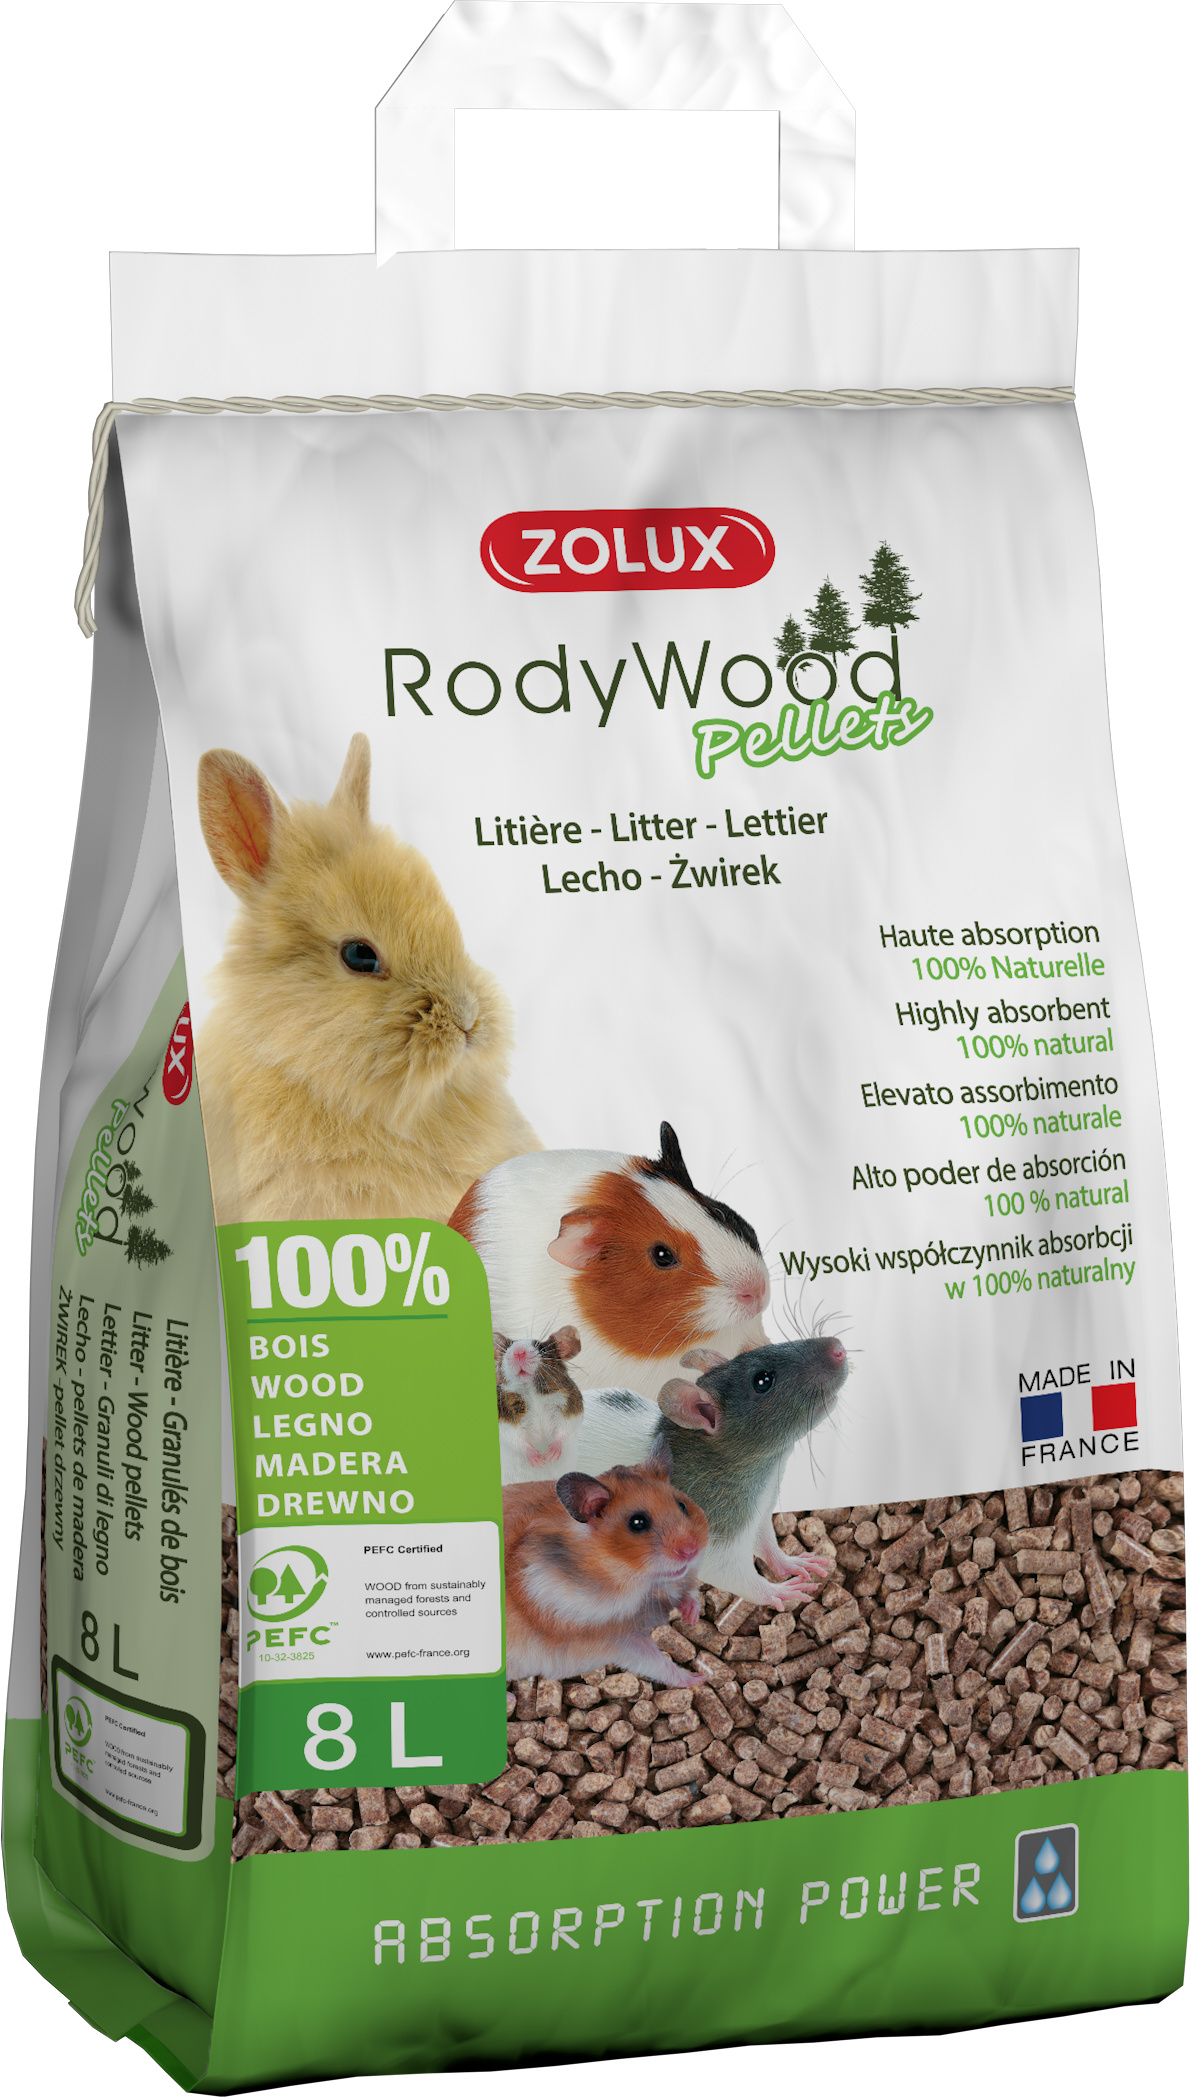 Lecho de pellets de madera RodyWood Pellets para roedores